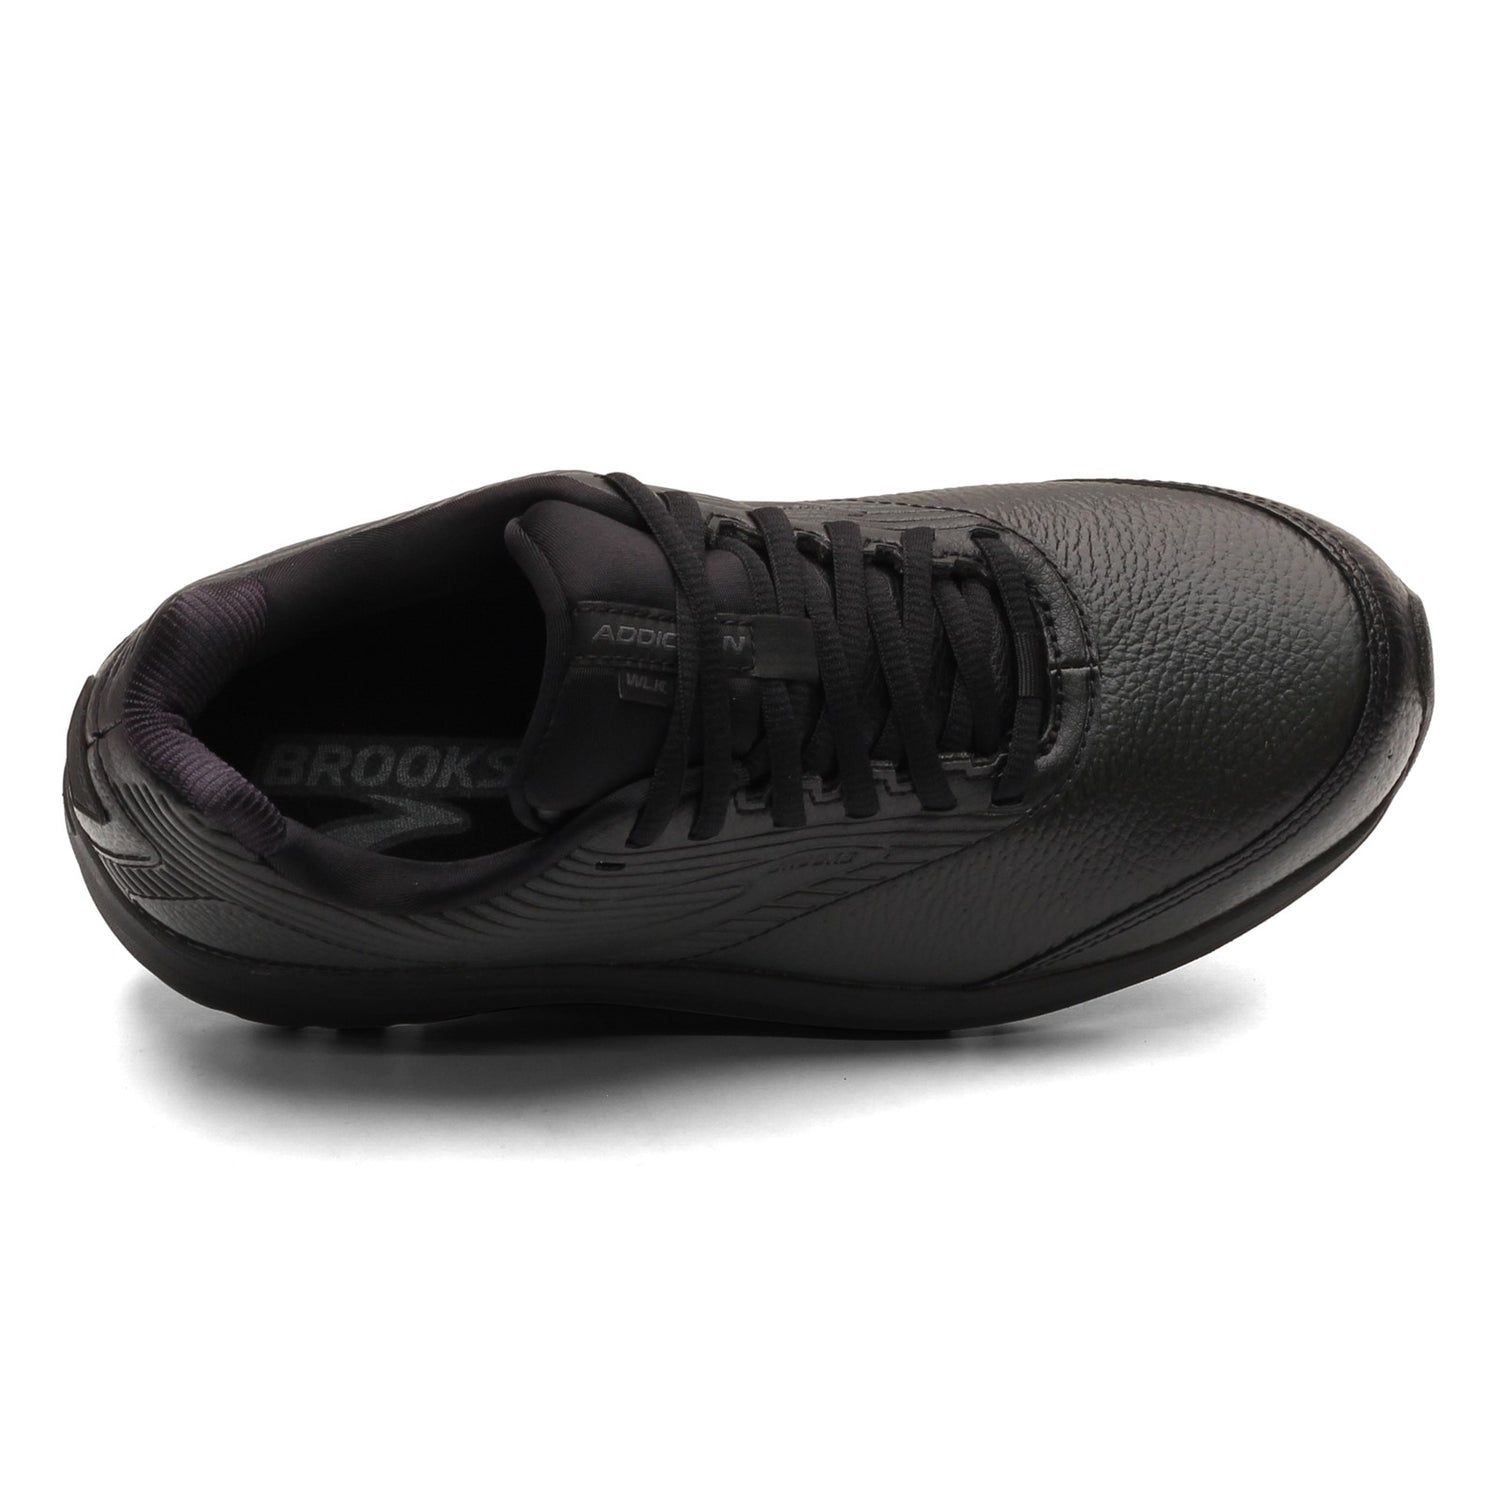 Peltz Shoes  Women's Brooks Addiction Walker 2 Walking Shoe - Wide Width Black/Black 120307 1D 072